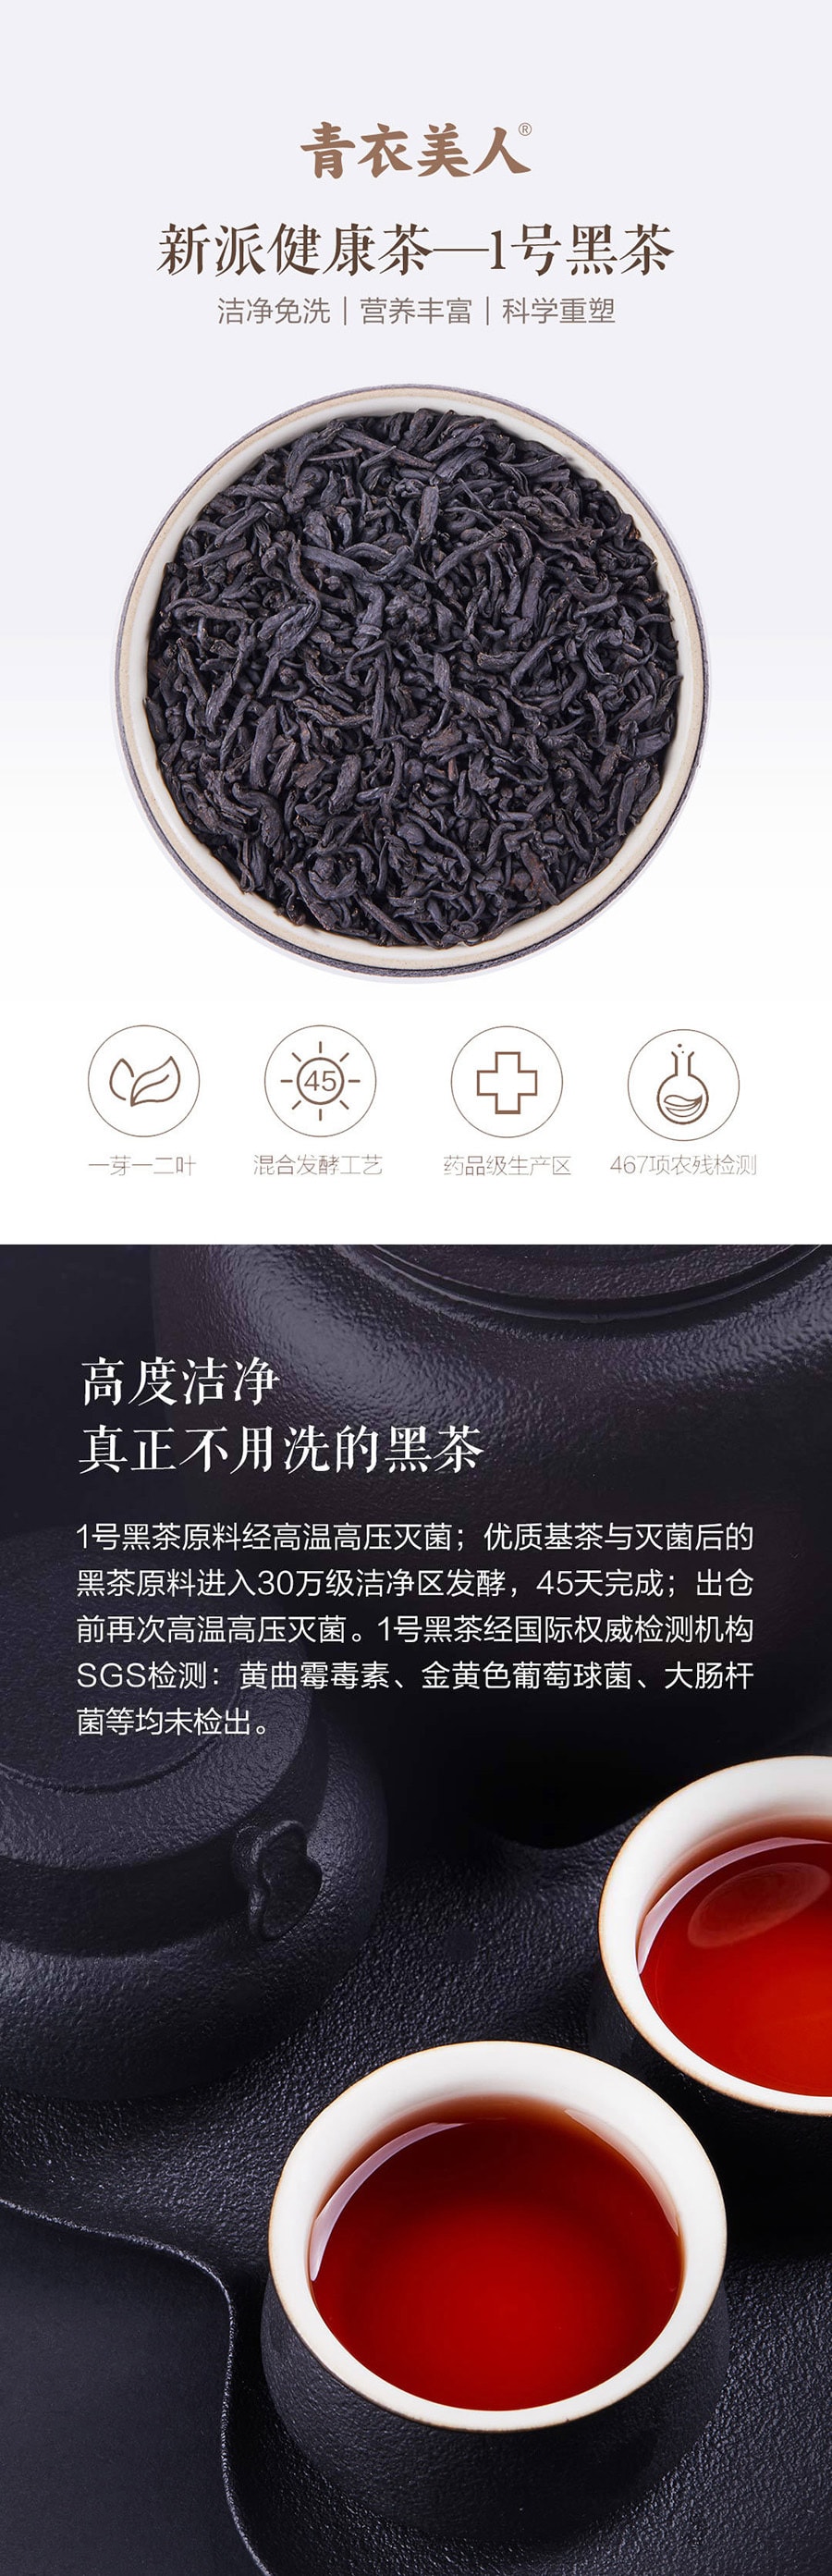 【中国直邮】小米有品青衣美人纯粹系列1号黑茶200g (5gx40包/盒)